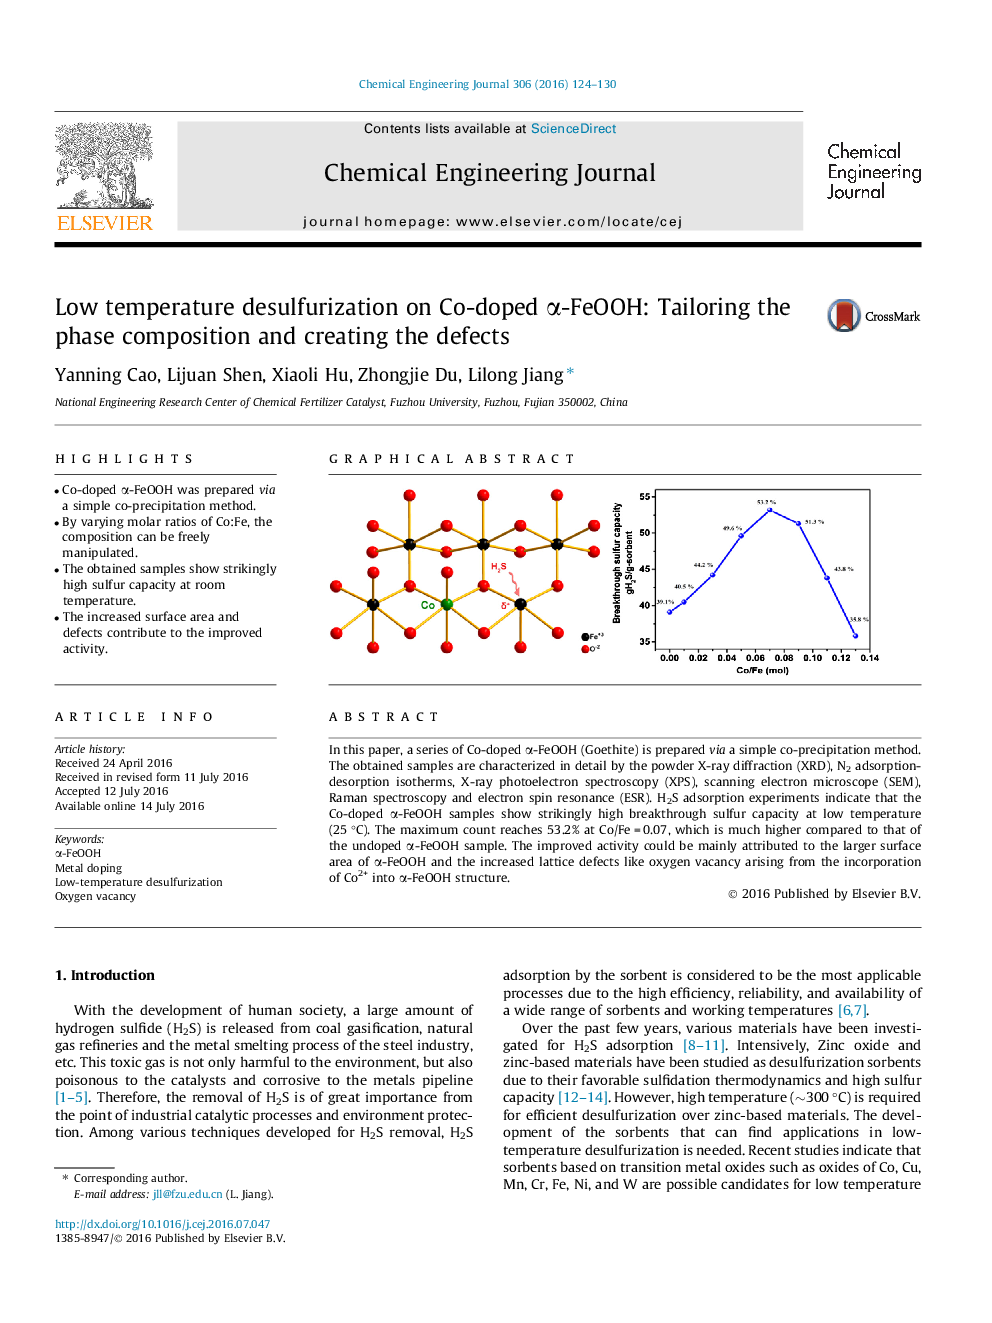 گوگردزدایی روی α-FeOOH دپه شده با کبالت در دمای پایین: تناسب ترکیب فاز و ایجاد نقص